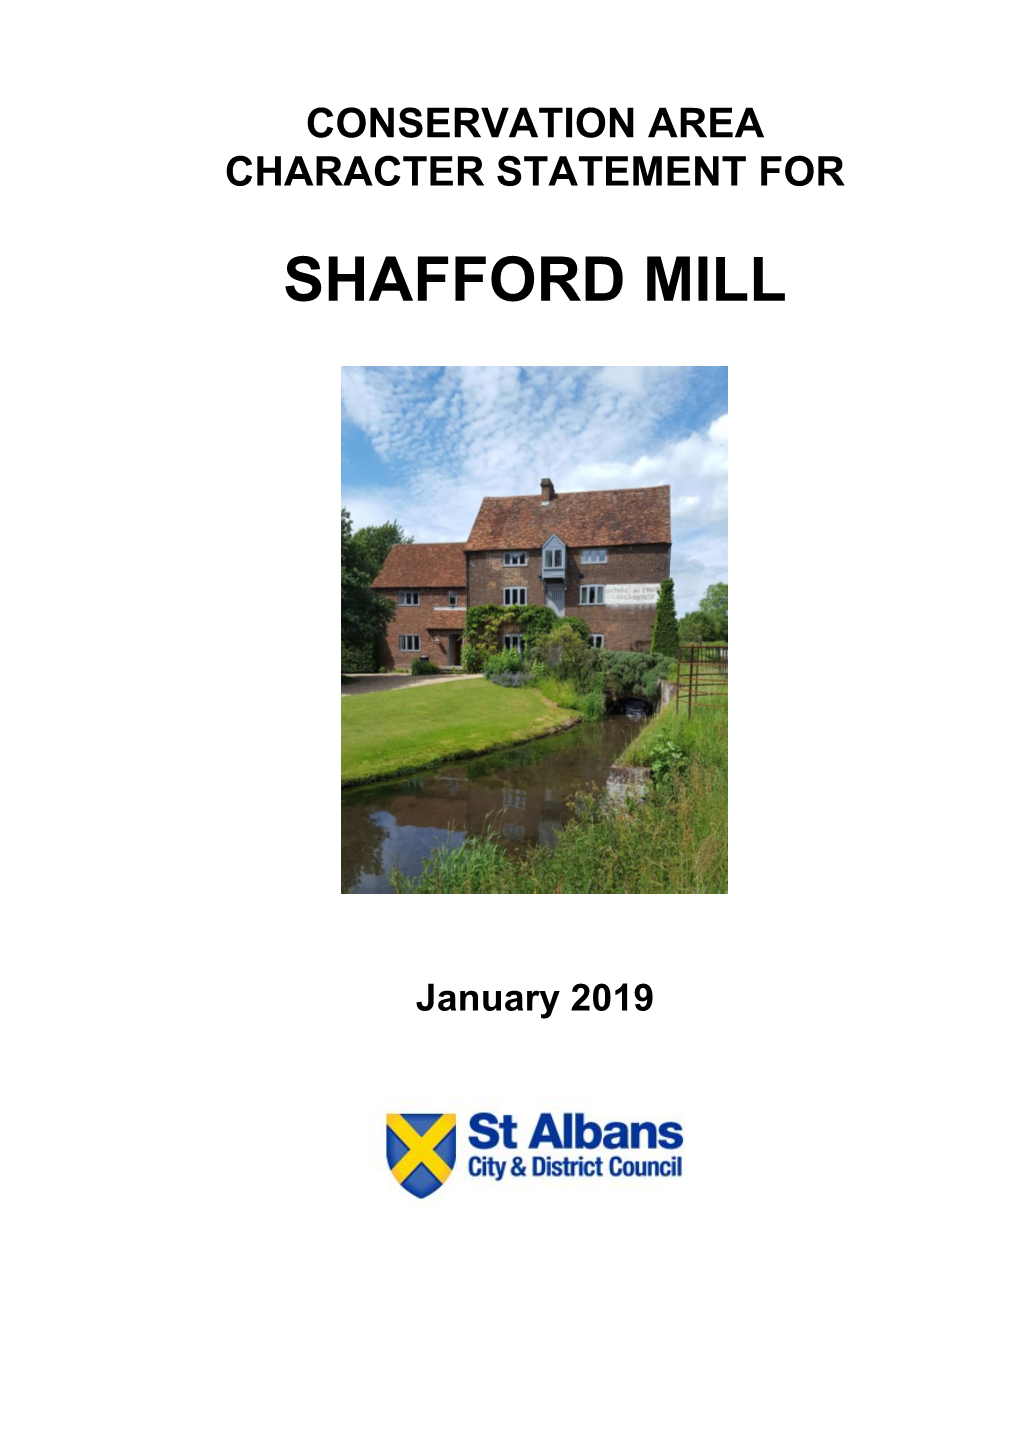 Shafford Mill